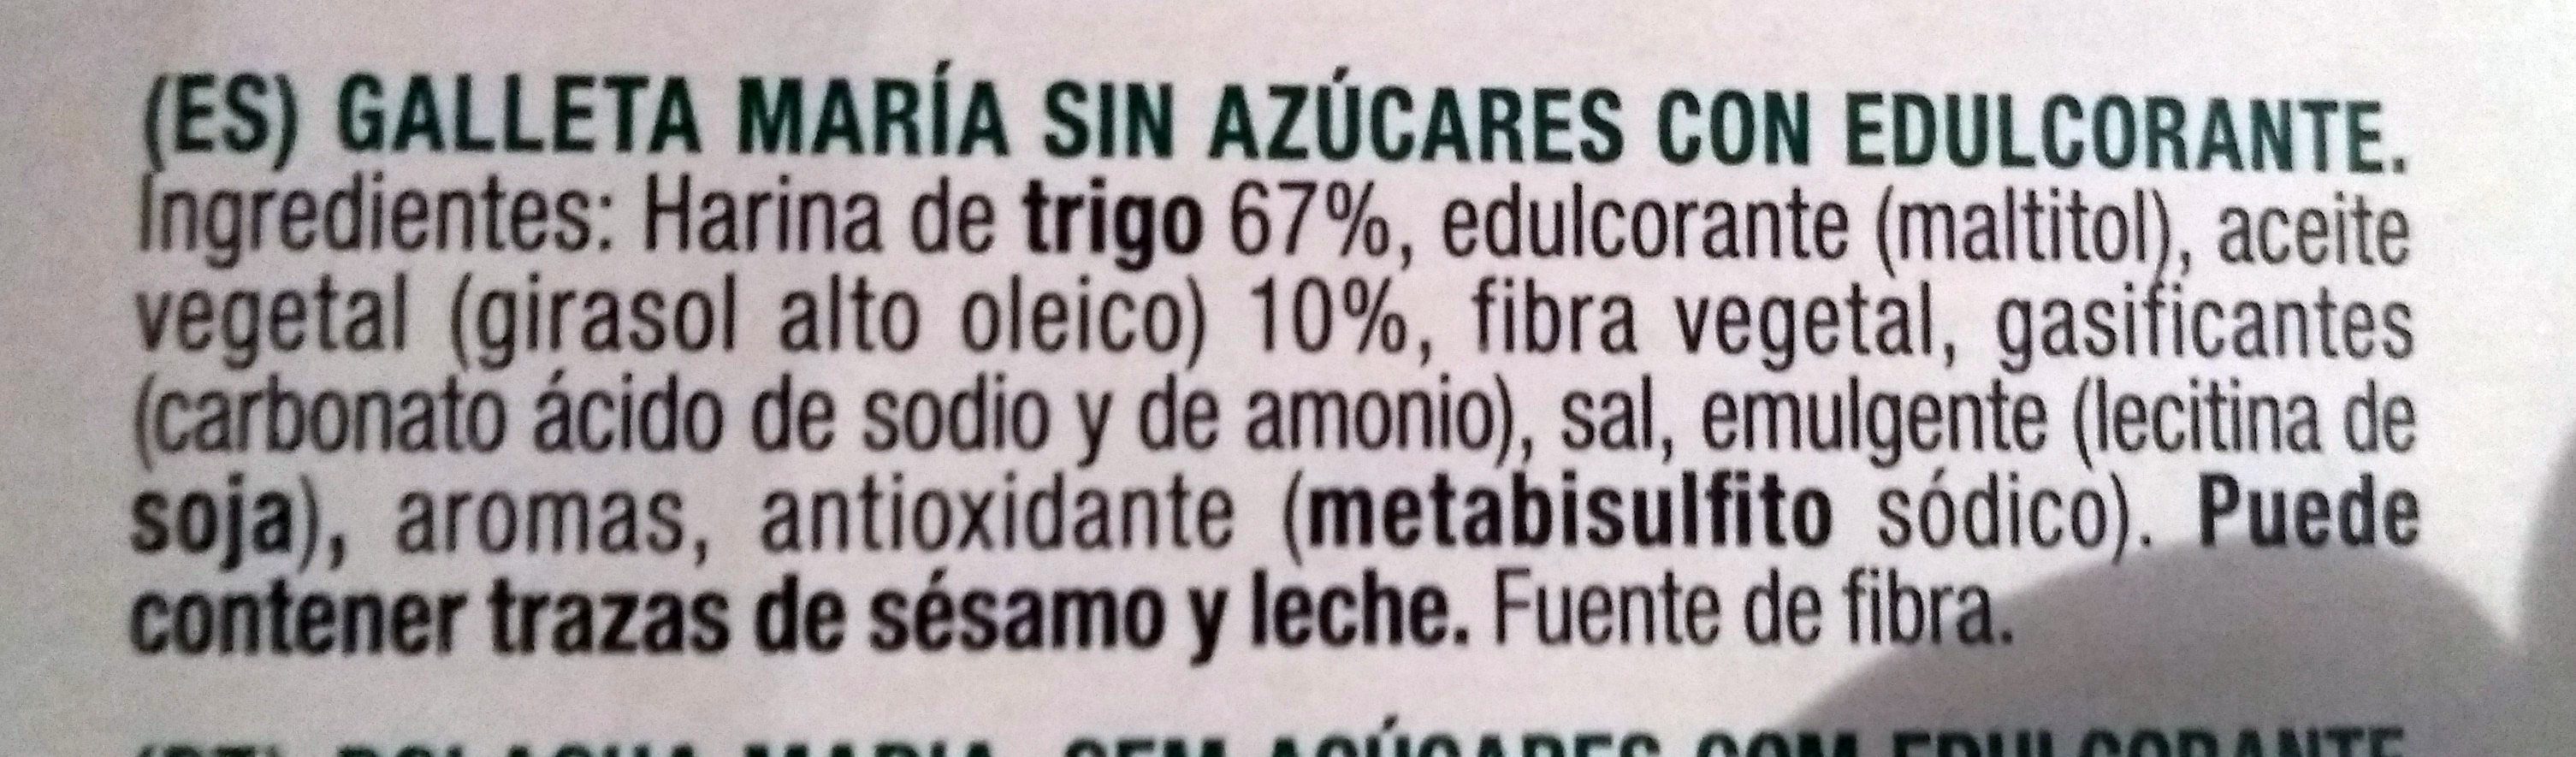 Galletas María sin azúcares. - Ingredientes